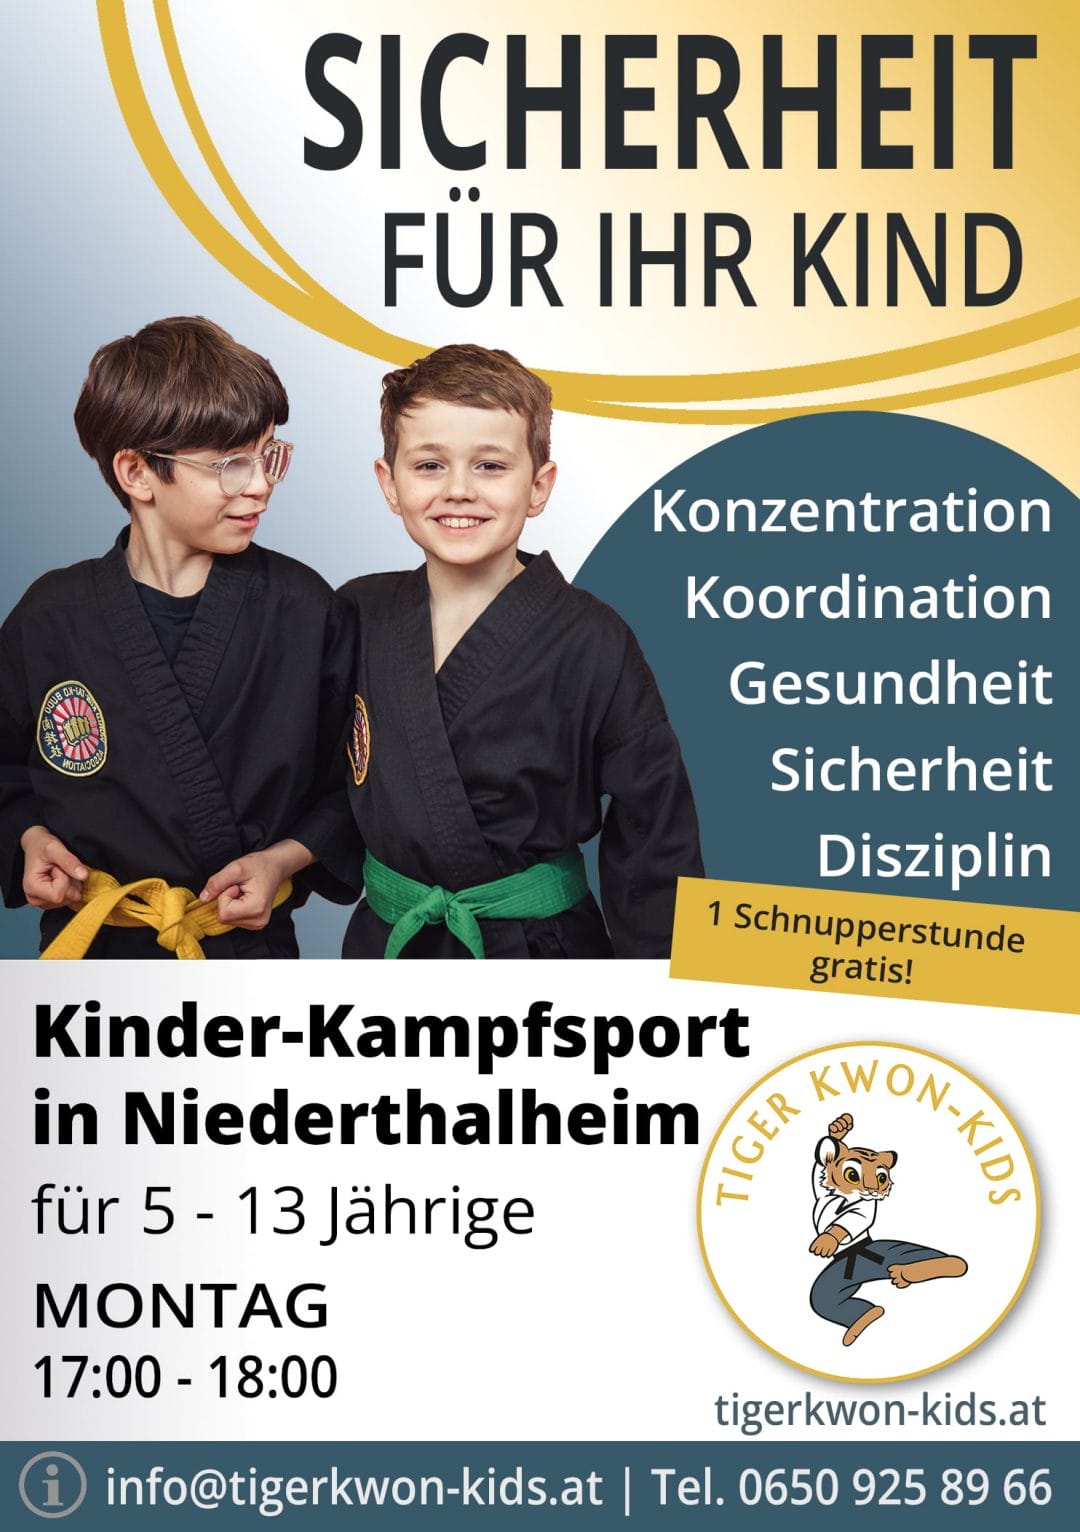 Flyer des Tiger Kwon - Kids Standorts in Niederthalheim mit Informationen zu Trainingsort und -zeit, illustriert durch fröhliche Jungen und Mädchen.